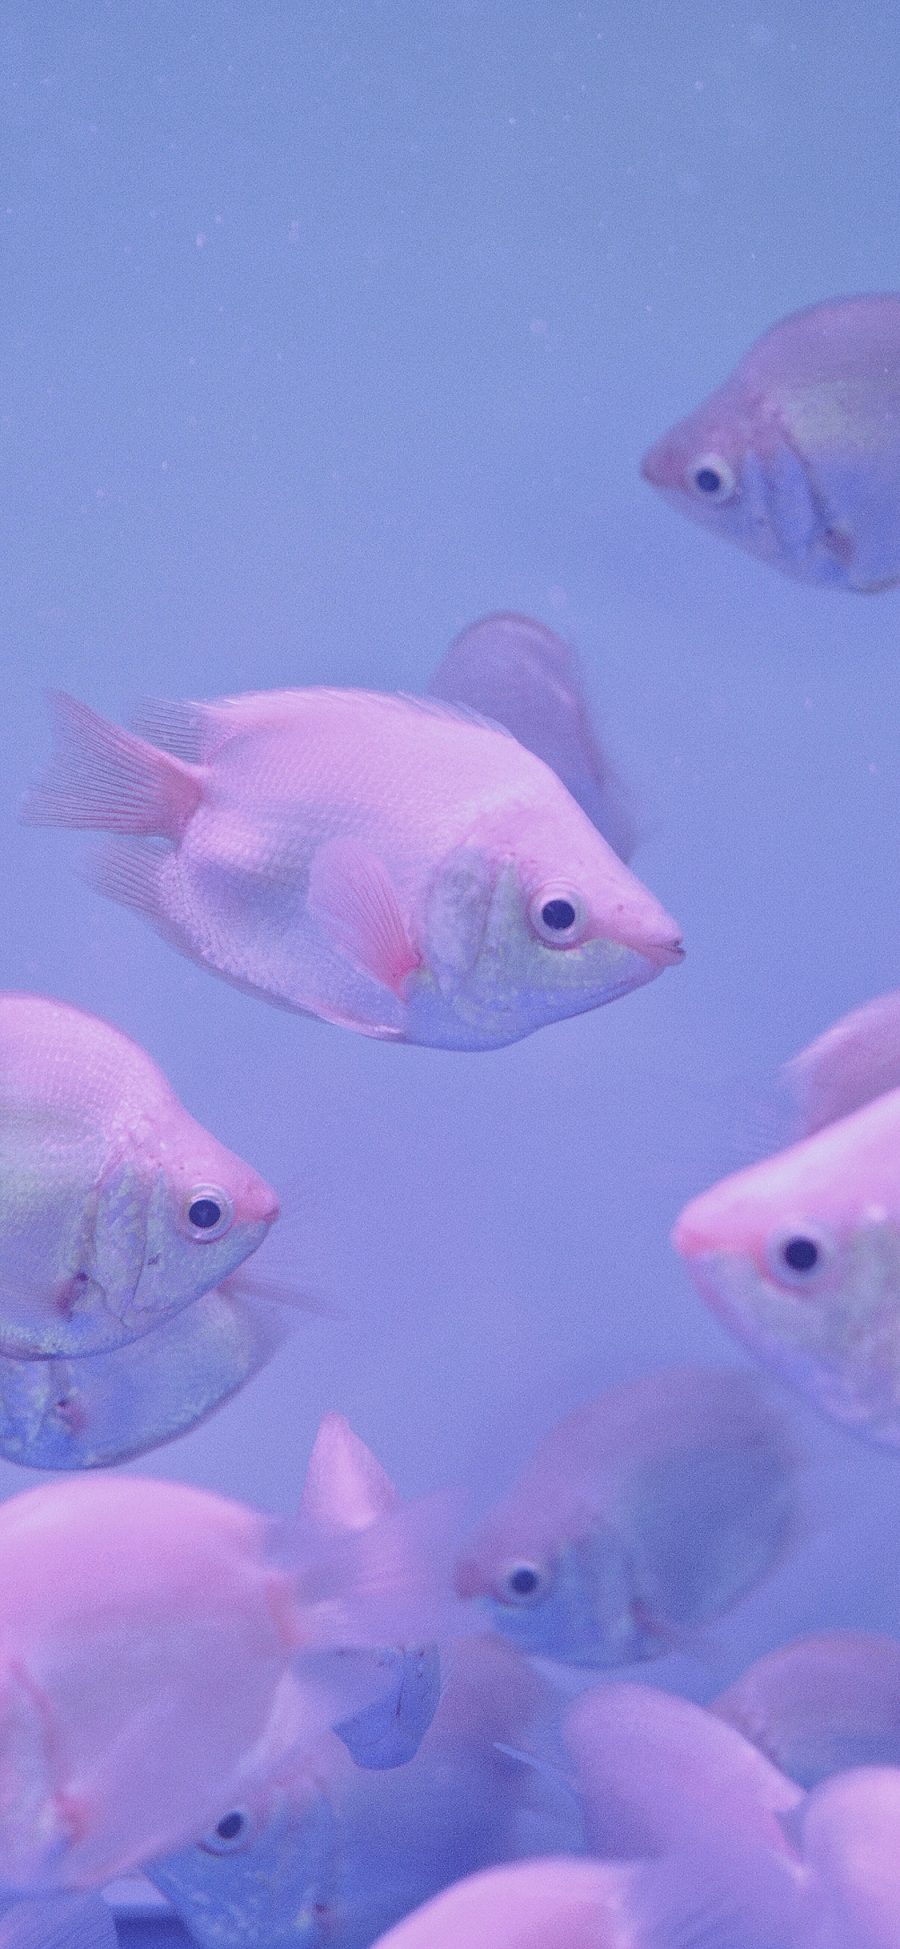 [2436×1125]金鱼 游动 鱼缸 水族 鱼群 紫色 苹果手机壁纸图片